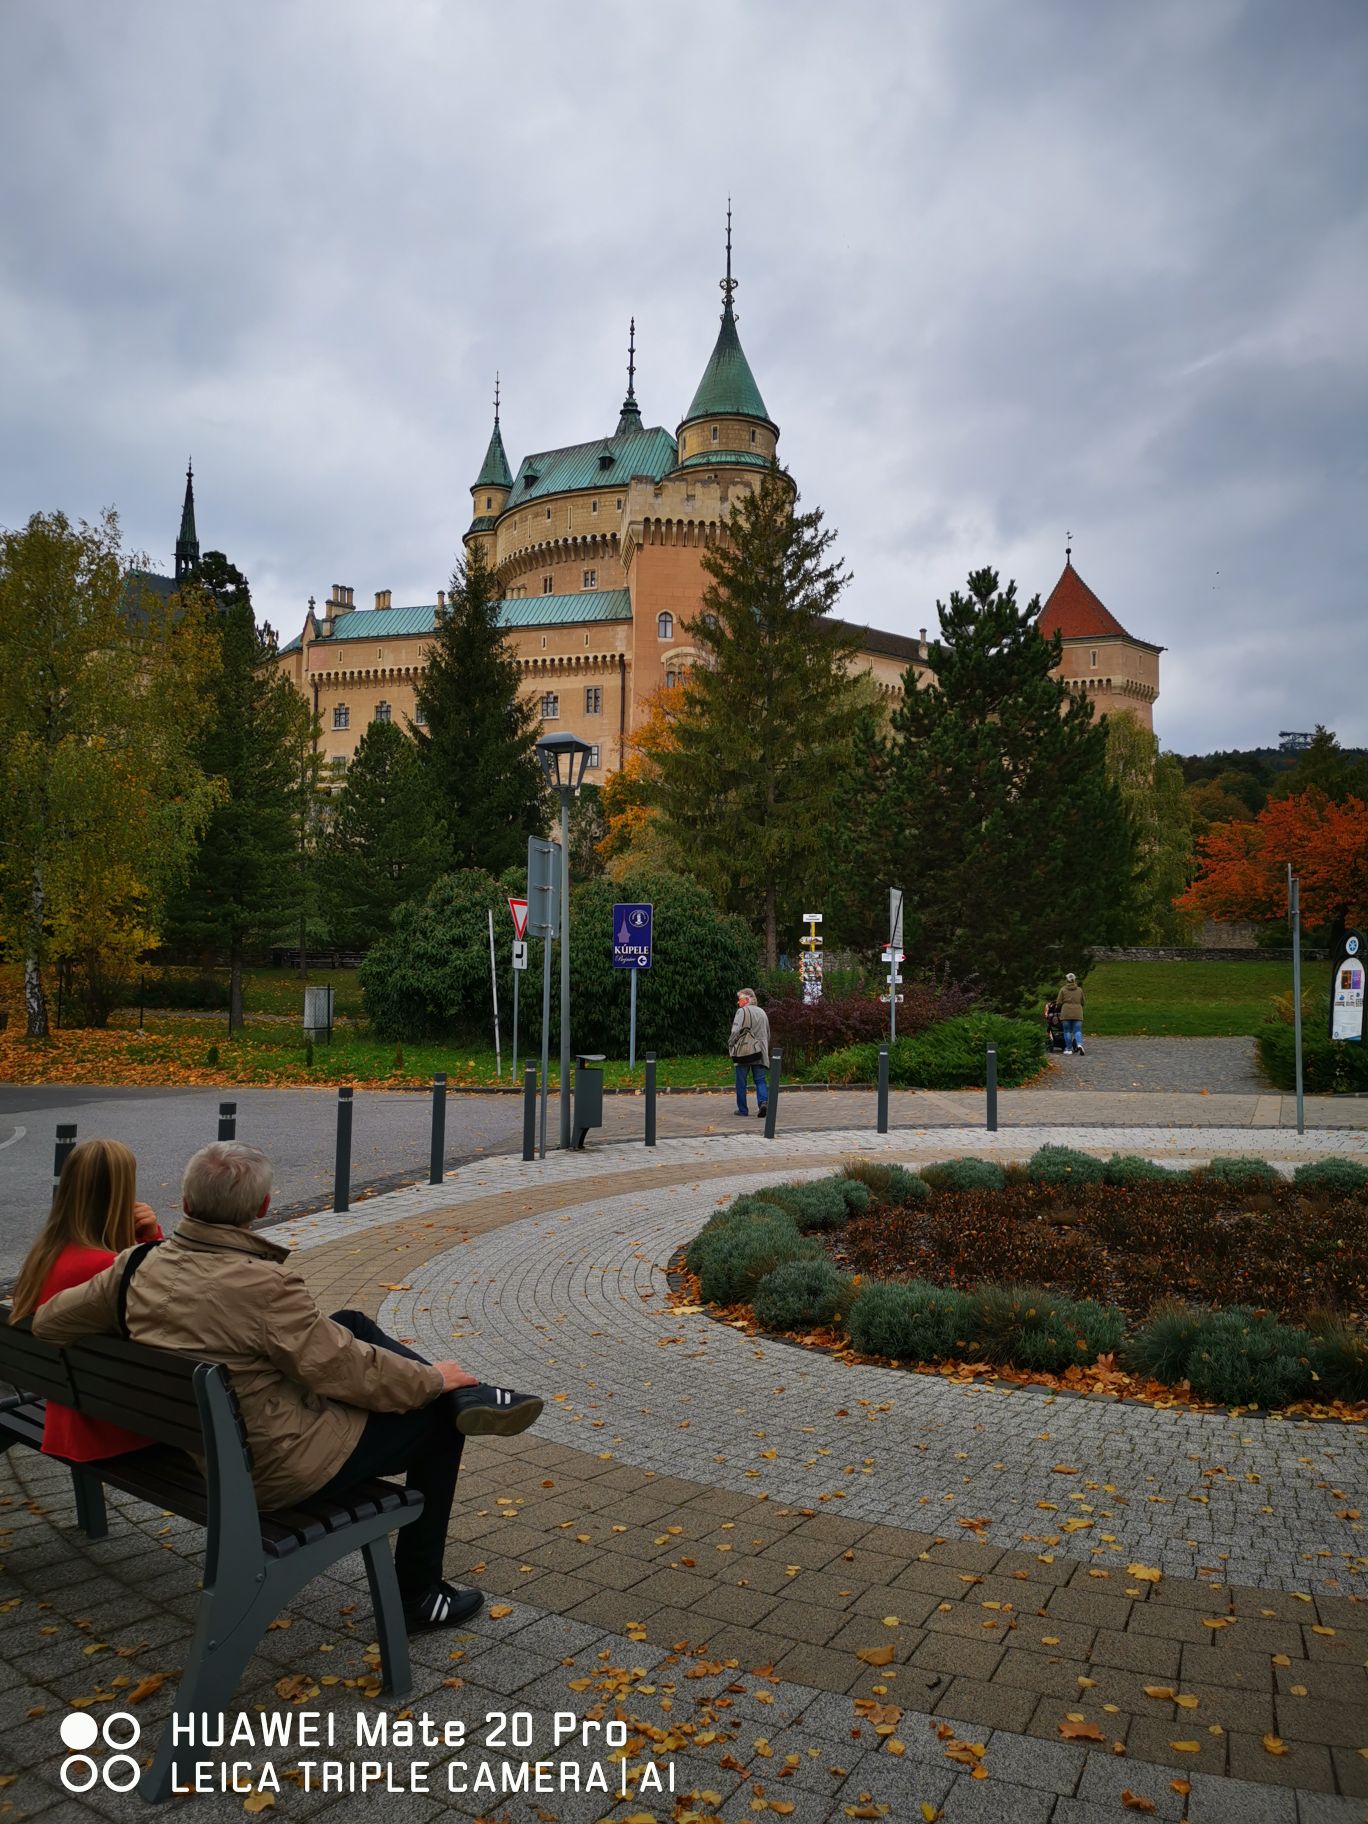 #博伊尼采城堡的美丽传说# 博伊尼采（Bojnice）城堡可以说是全斯洛伐克境内最受欢迎的一座古堡。